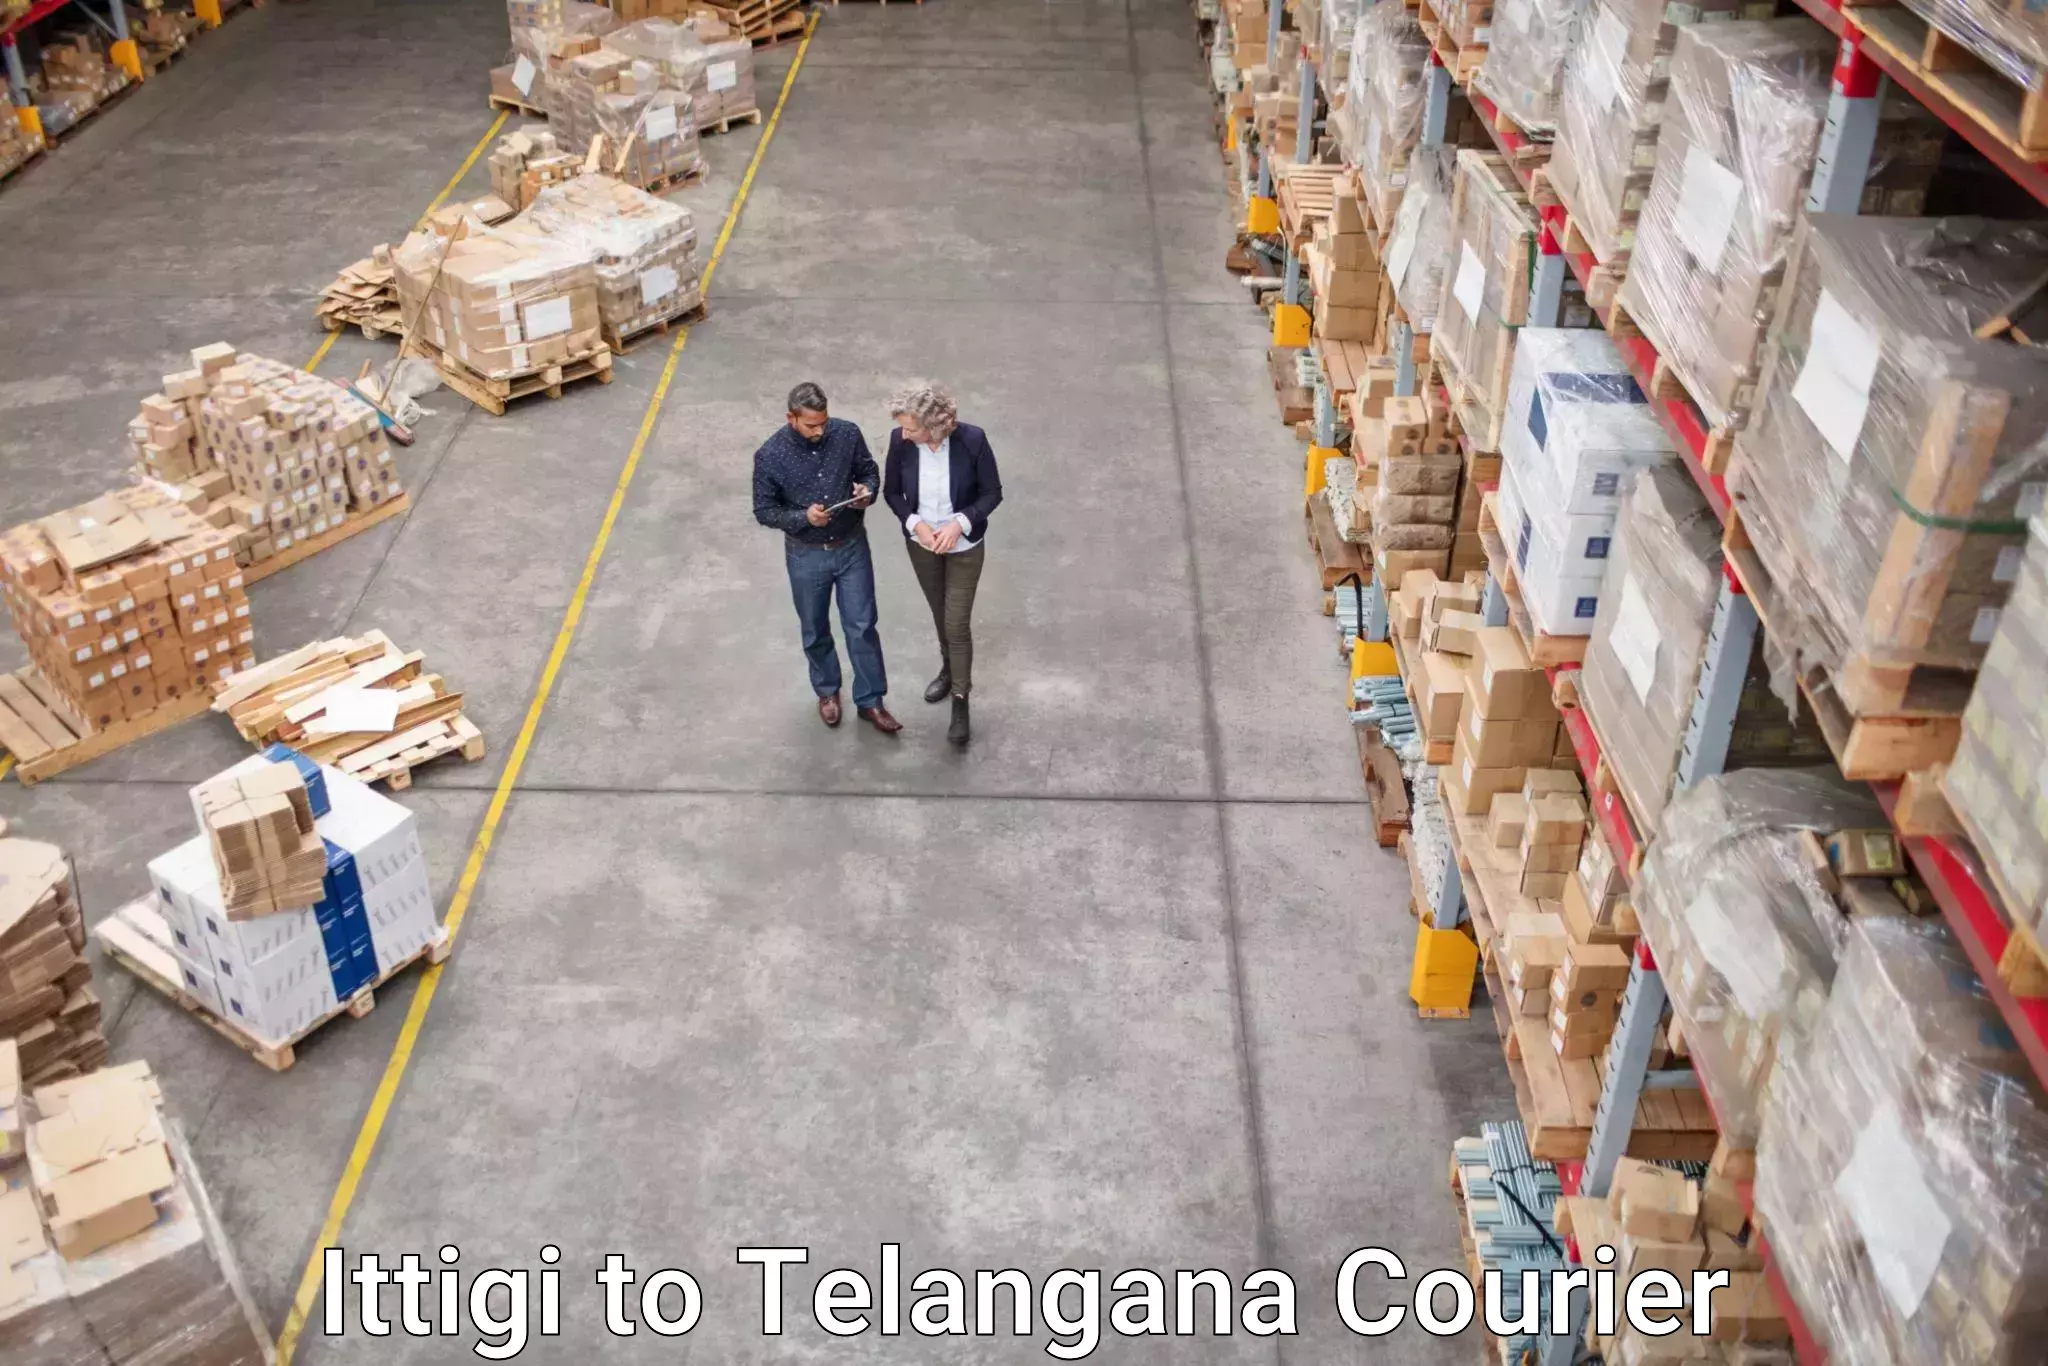 Custom courier solutions in Ittigi to Kollapur